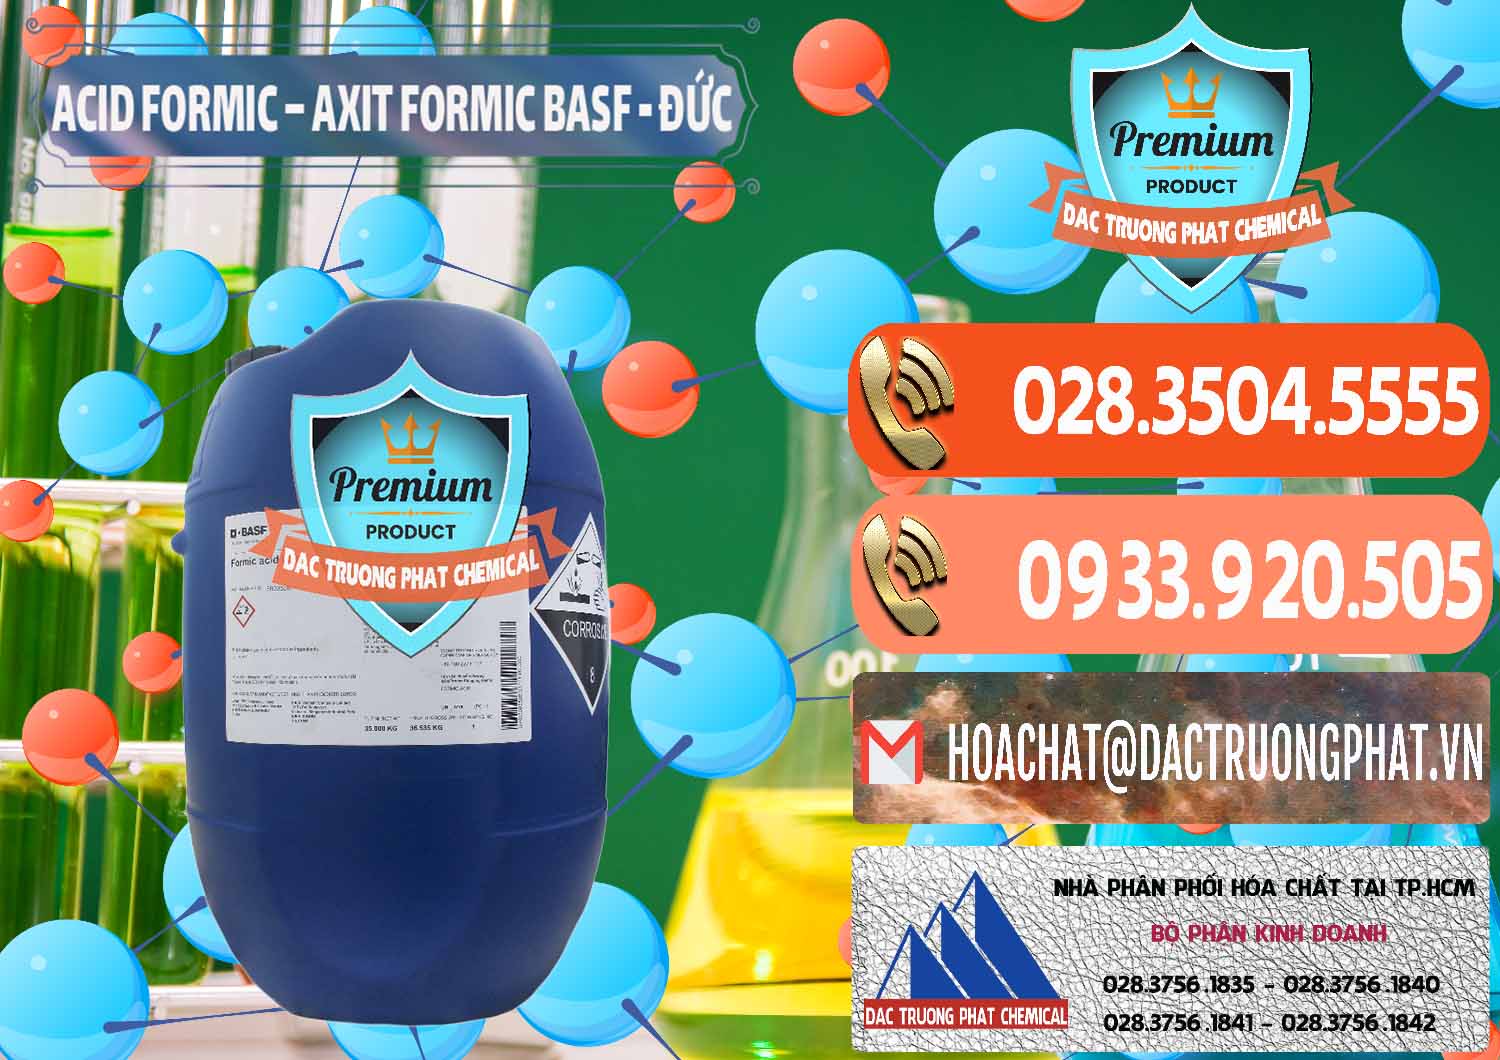 Cty chuyên cung ứng và bán Acid Formic - Axit Formic BASF Đức Germany - 0028 - Nơi cung cấp và phân phối hóa chất tại TP.HCM - hoachatmientay.com